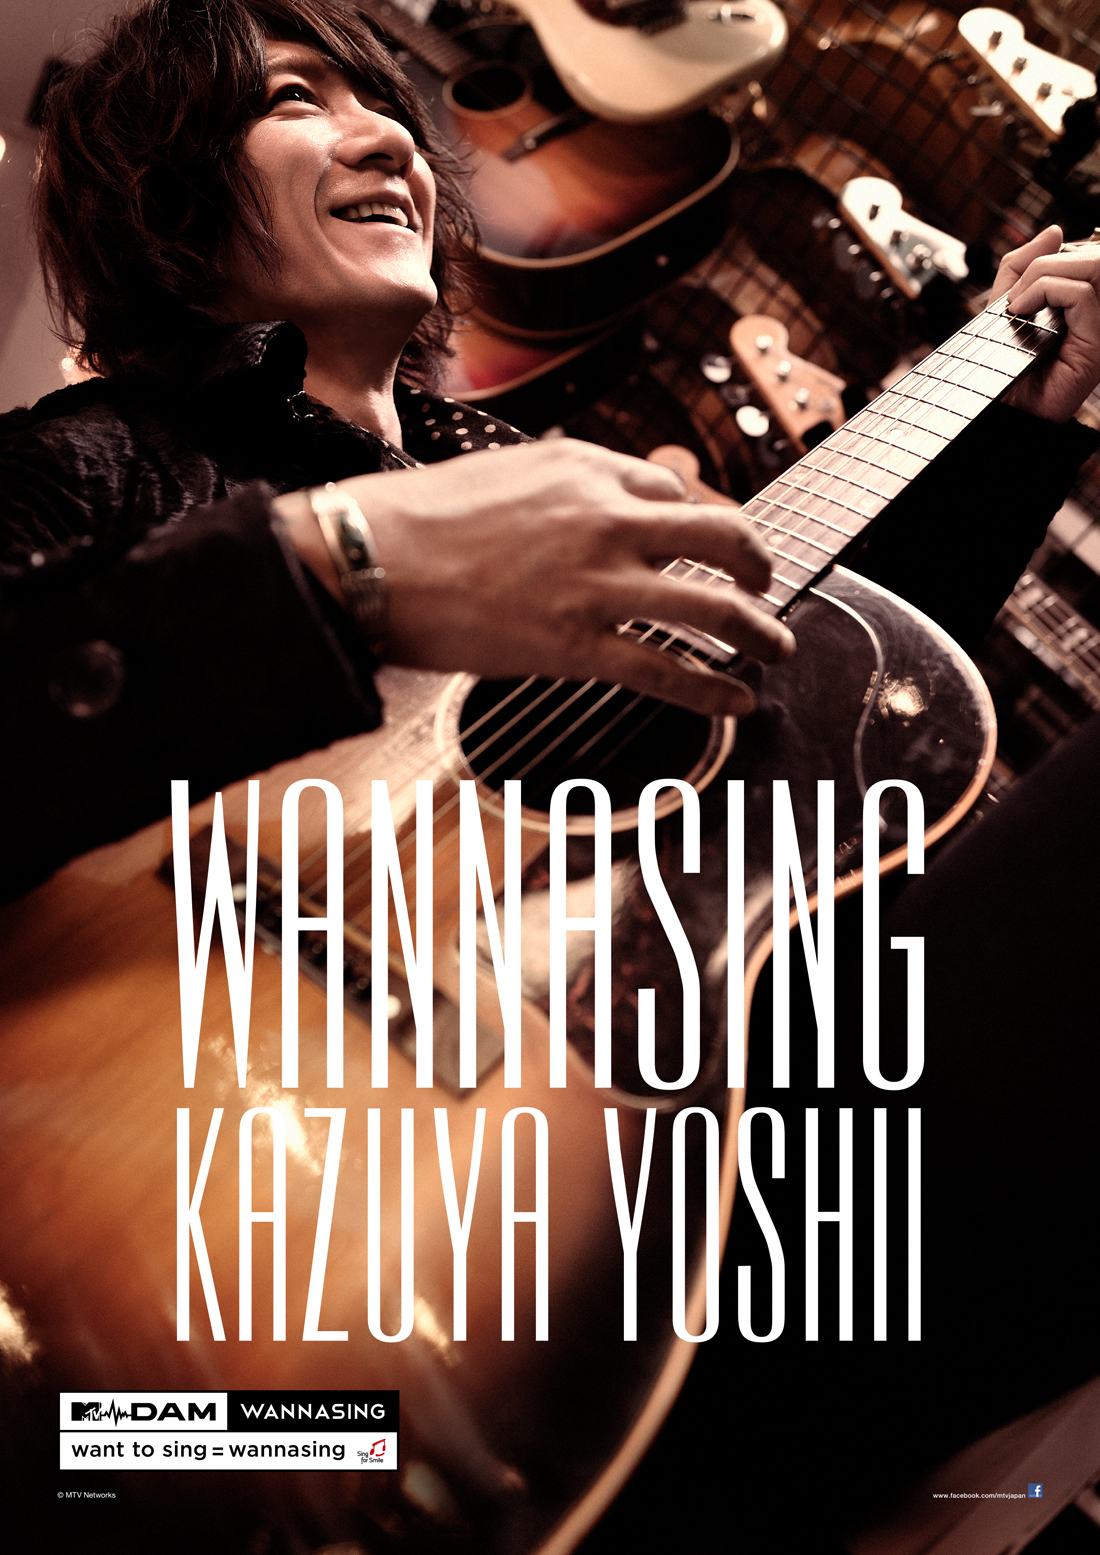 MTV_WANNASING_Kazuya Yoshii